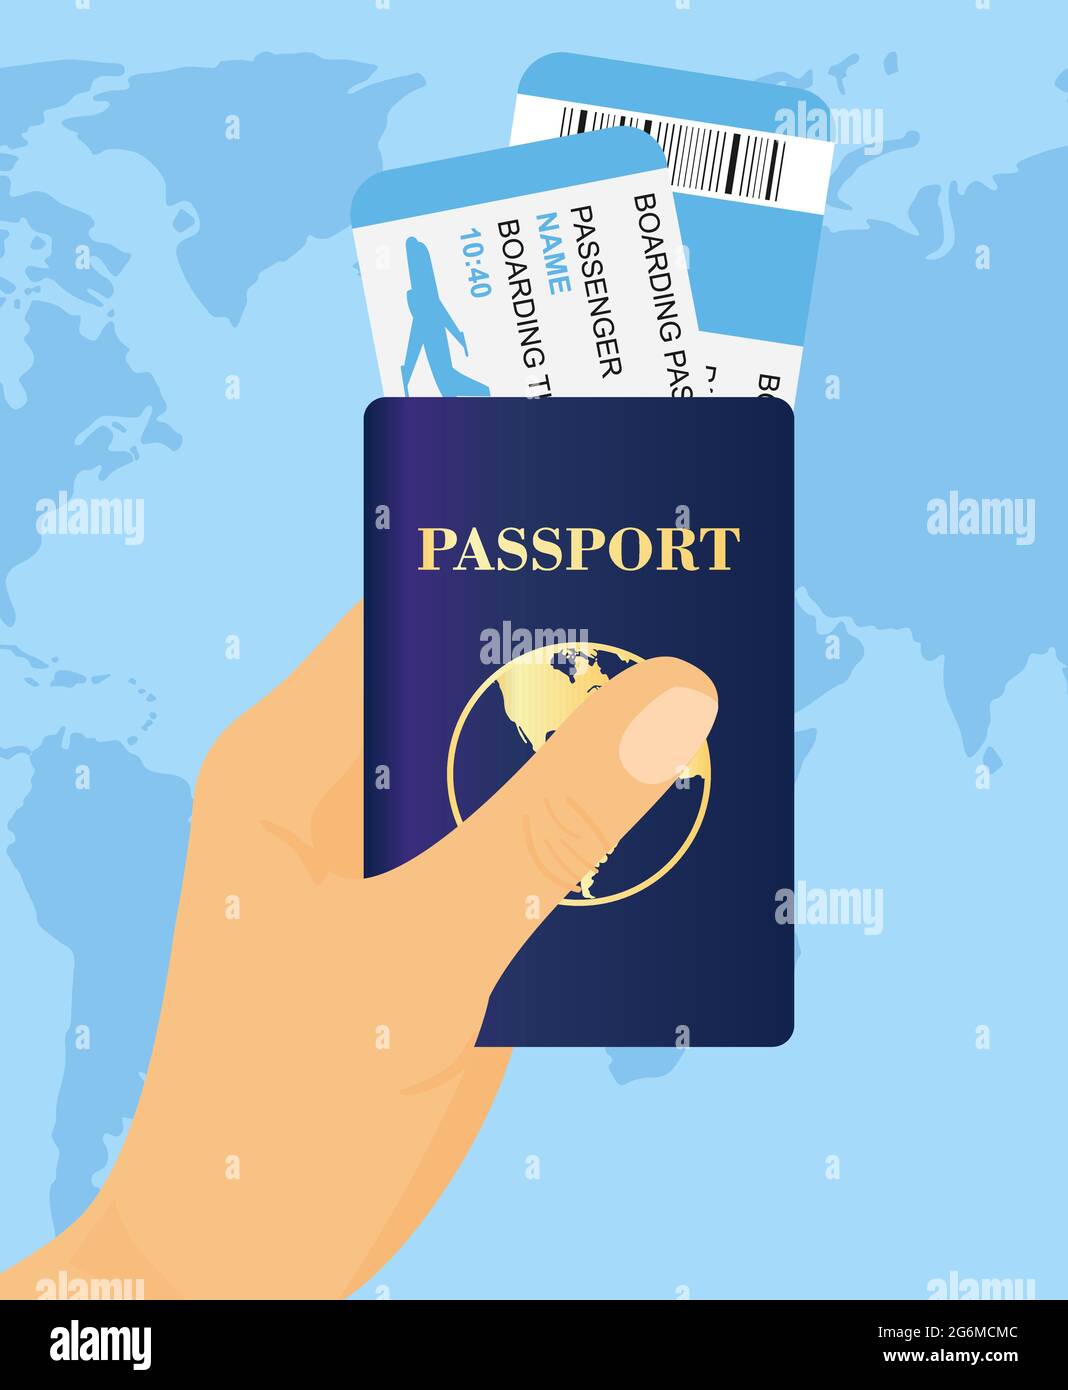 Vektor-Illustration von Hand halten Pass mit Tickets auf Weltkarte Hintergrund. Konzept Reise und Tourismus. Stock Vektor